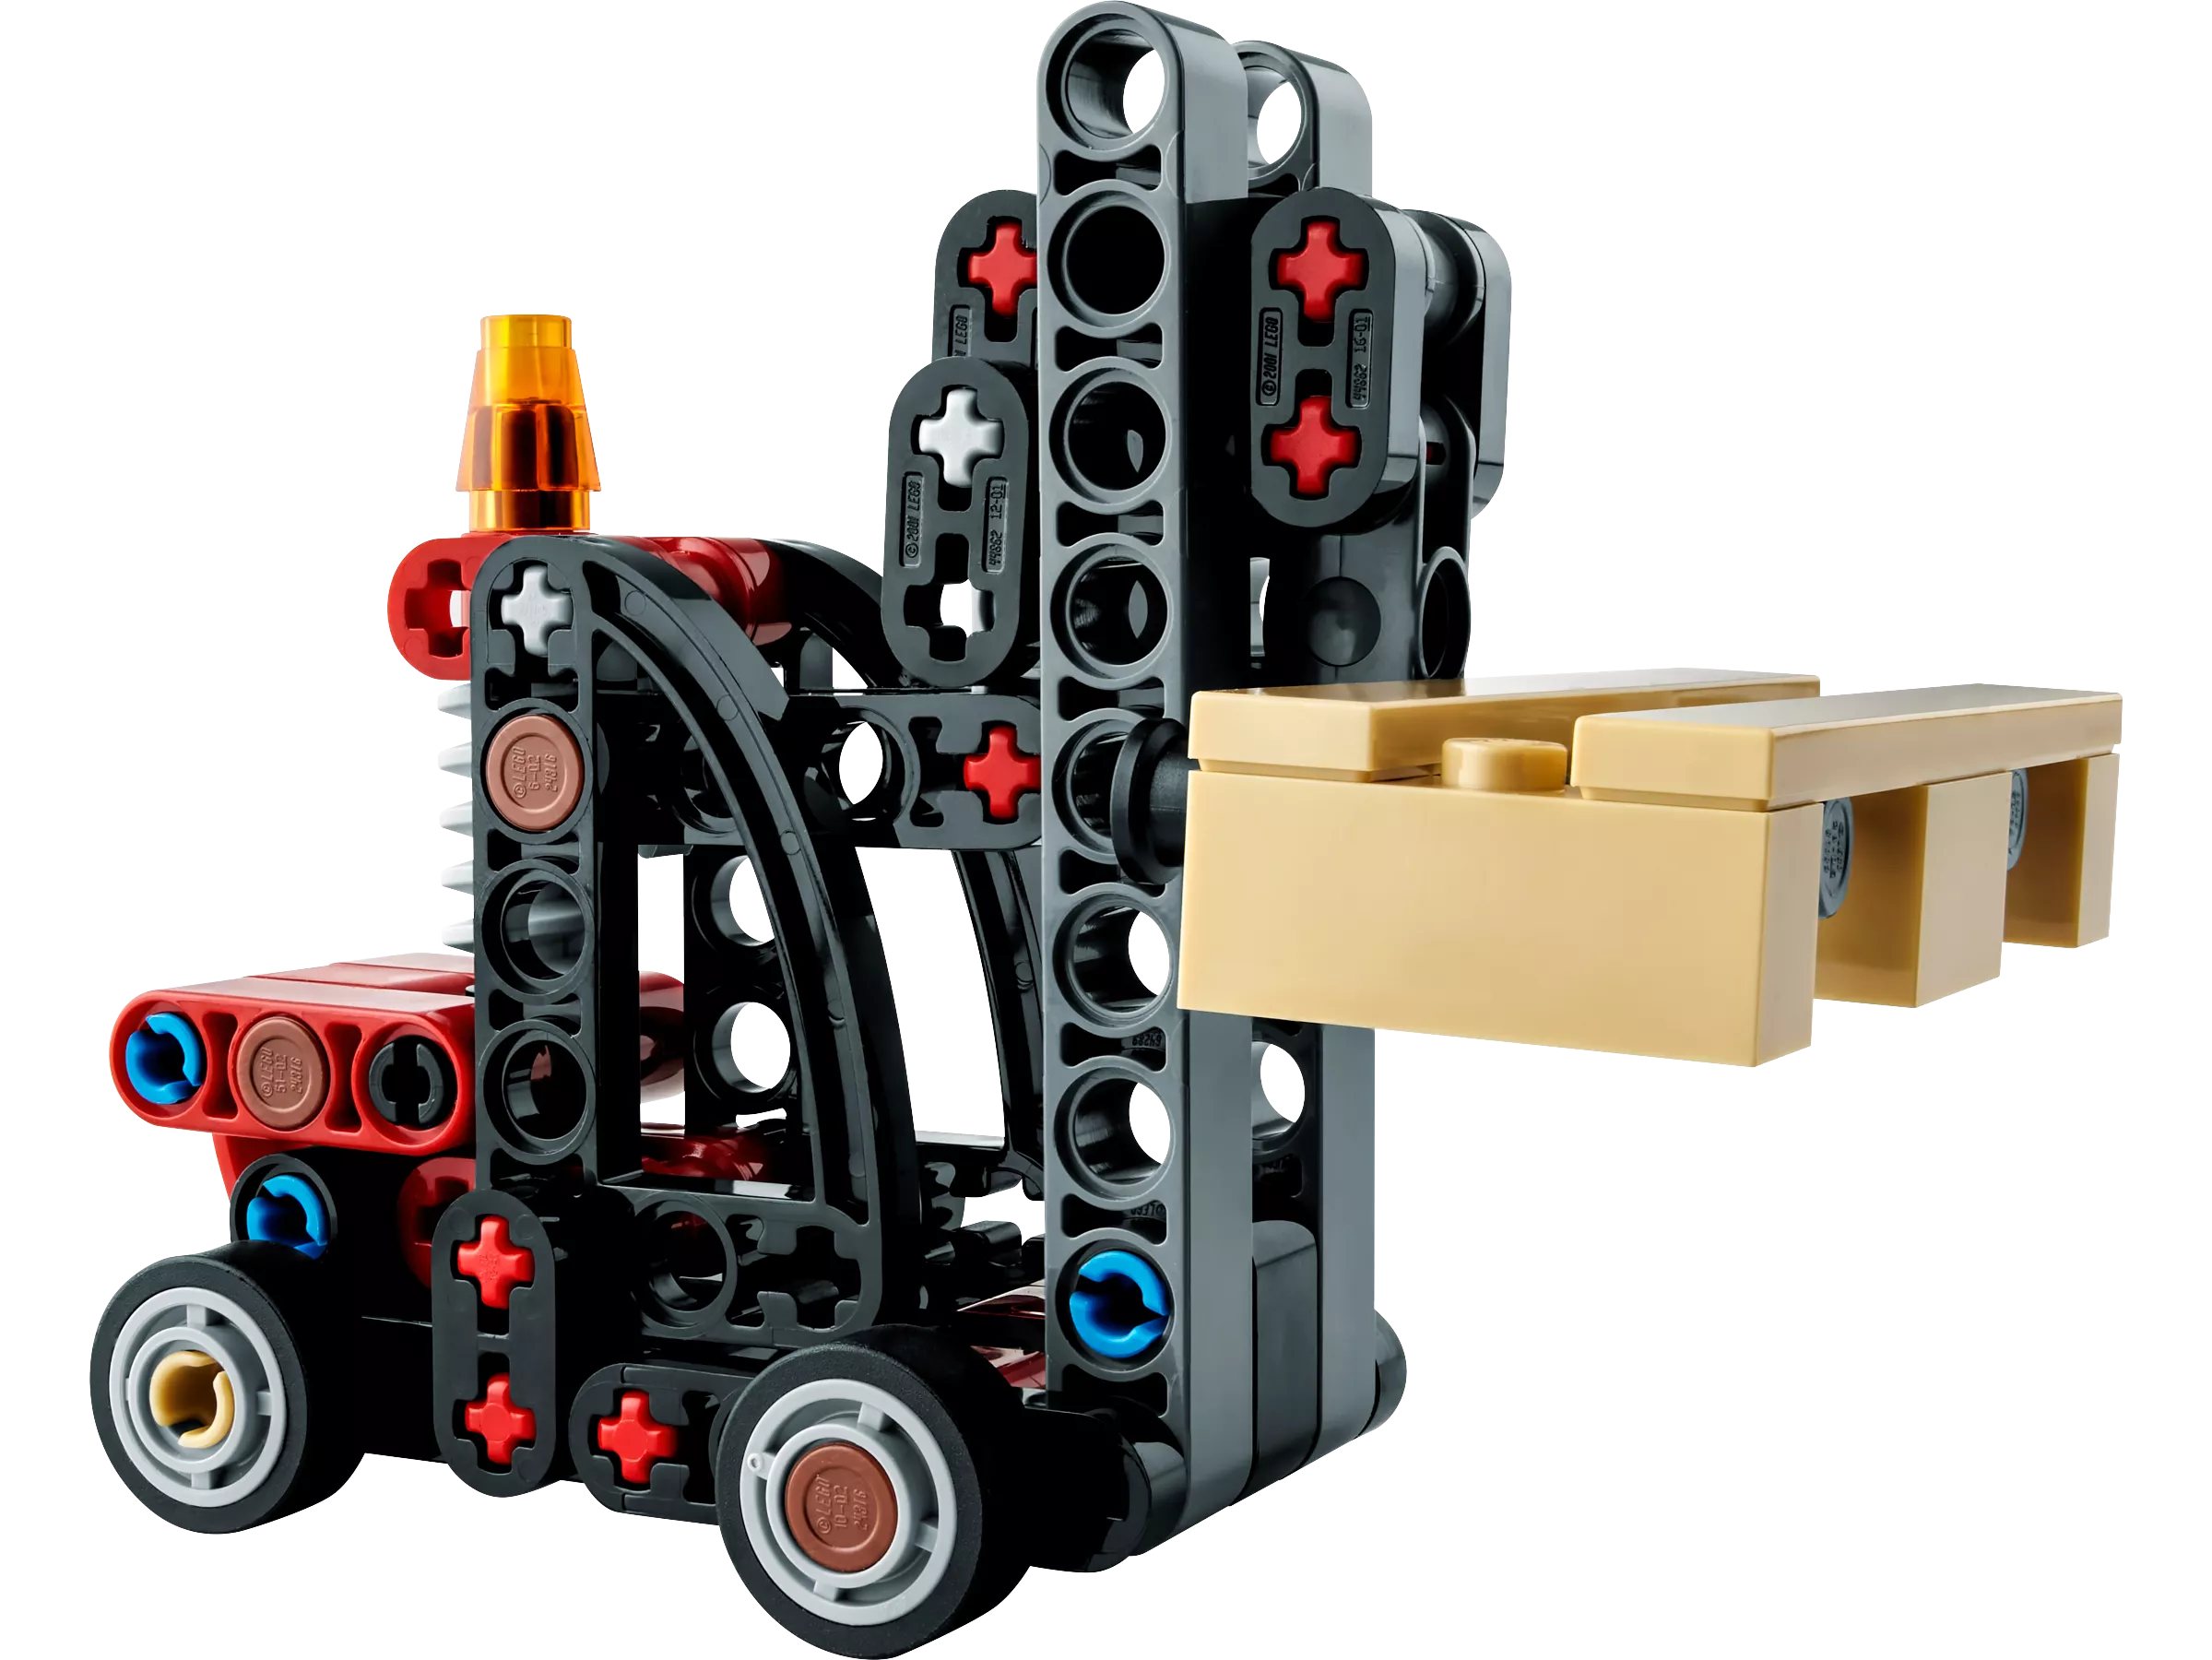 LEGO 30655 Gabelstapler mit Palette